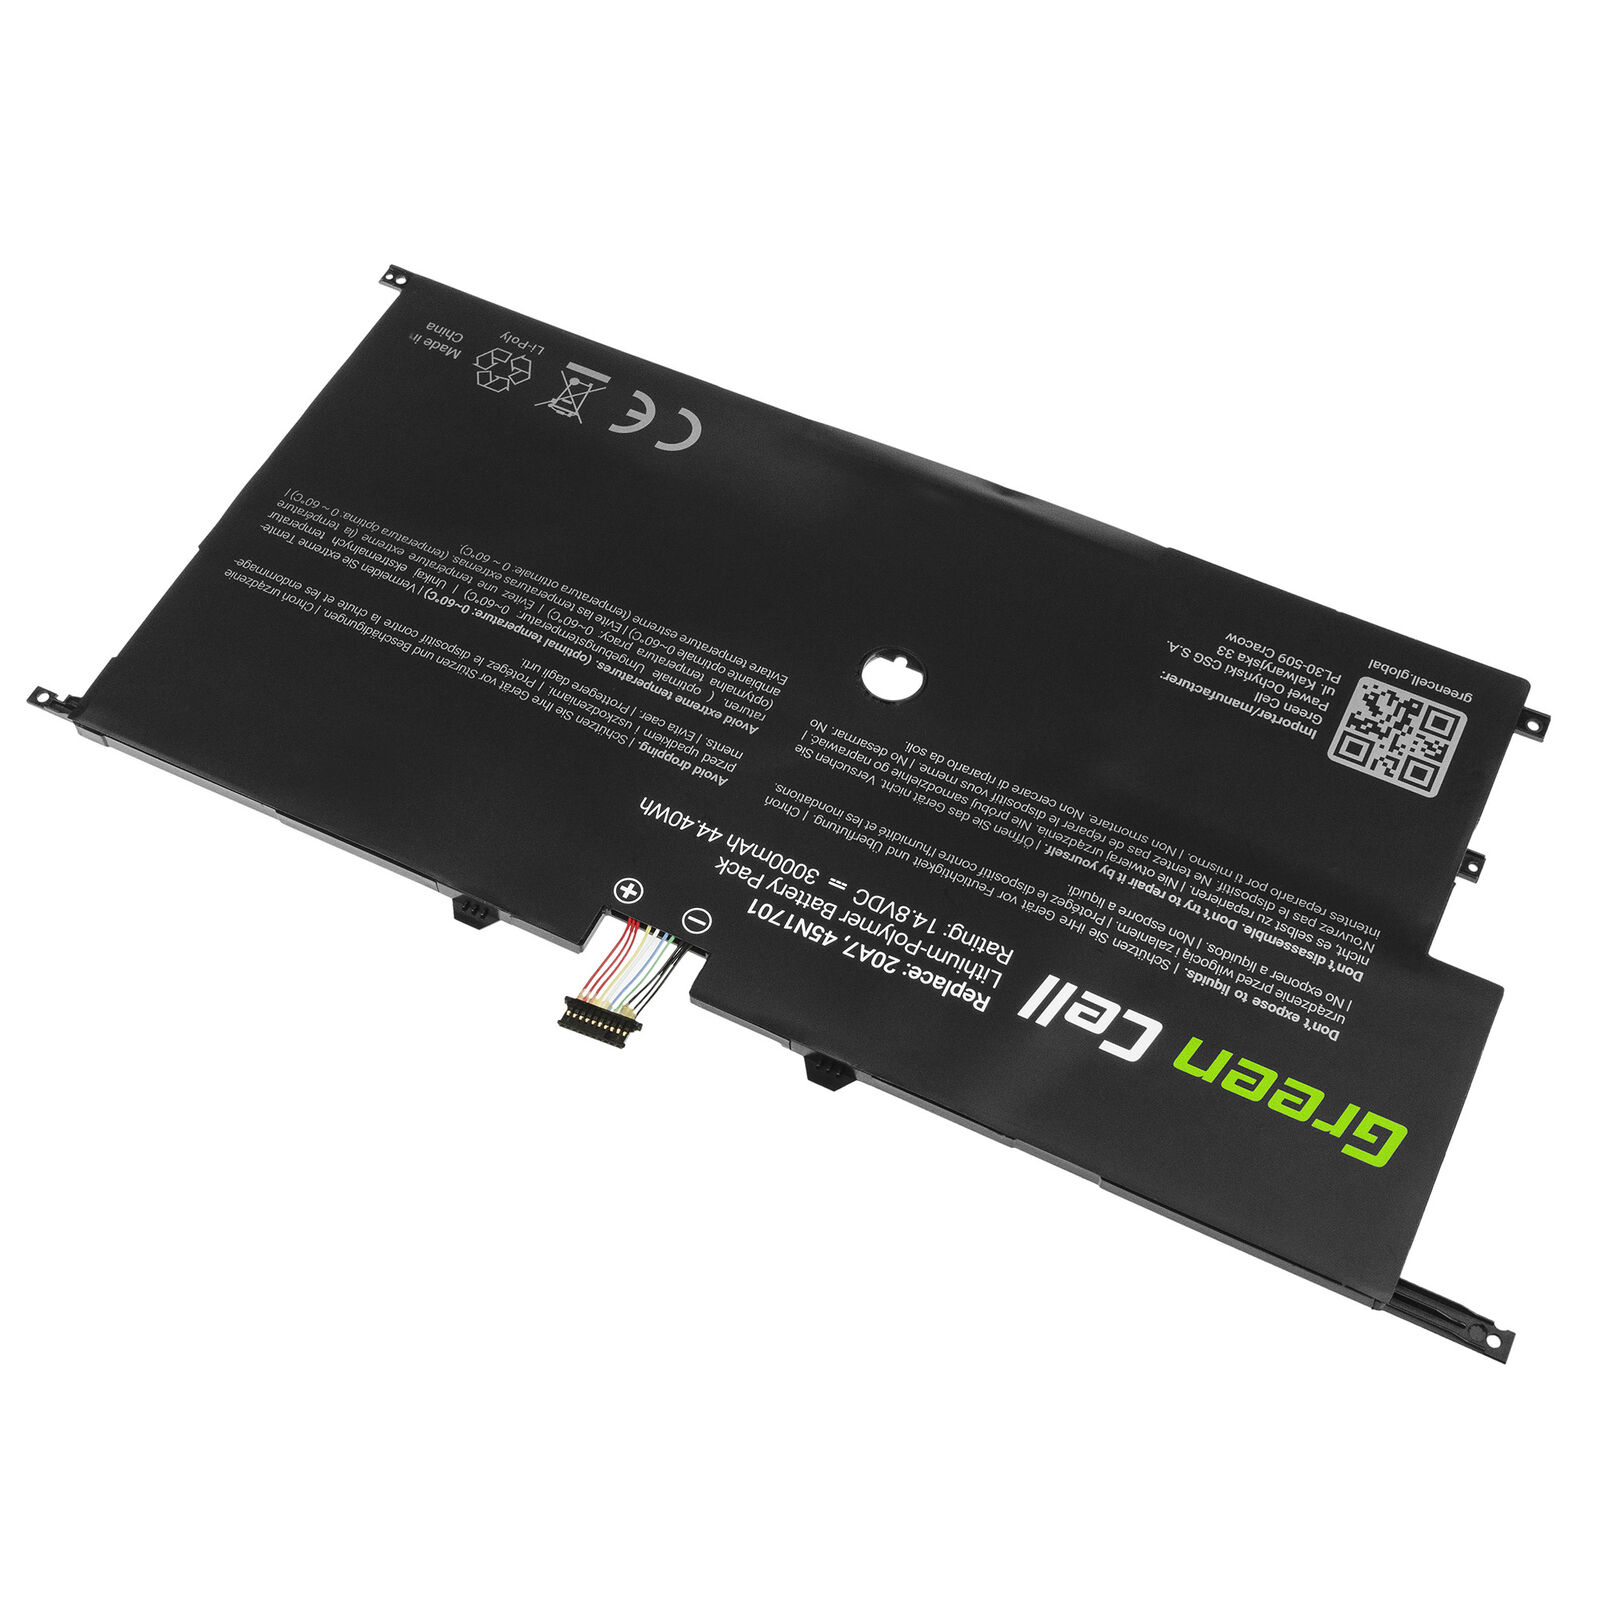 μπαταρία για Lenovo ThinkPad X1 Carbon 14 Gen 2 20A7 20A8 45N1702 45N1703 συμβιβάσιμος - Πατήστε στην εικόνα για να κλείσει